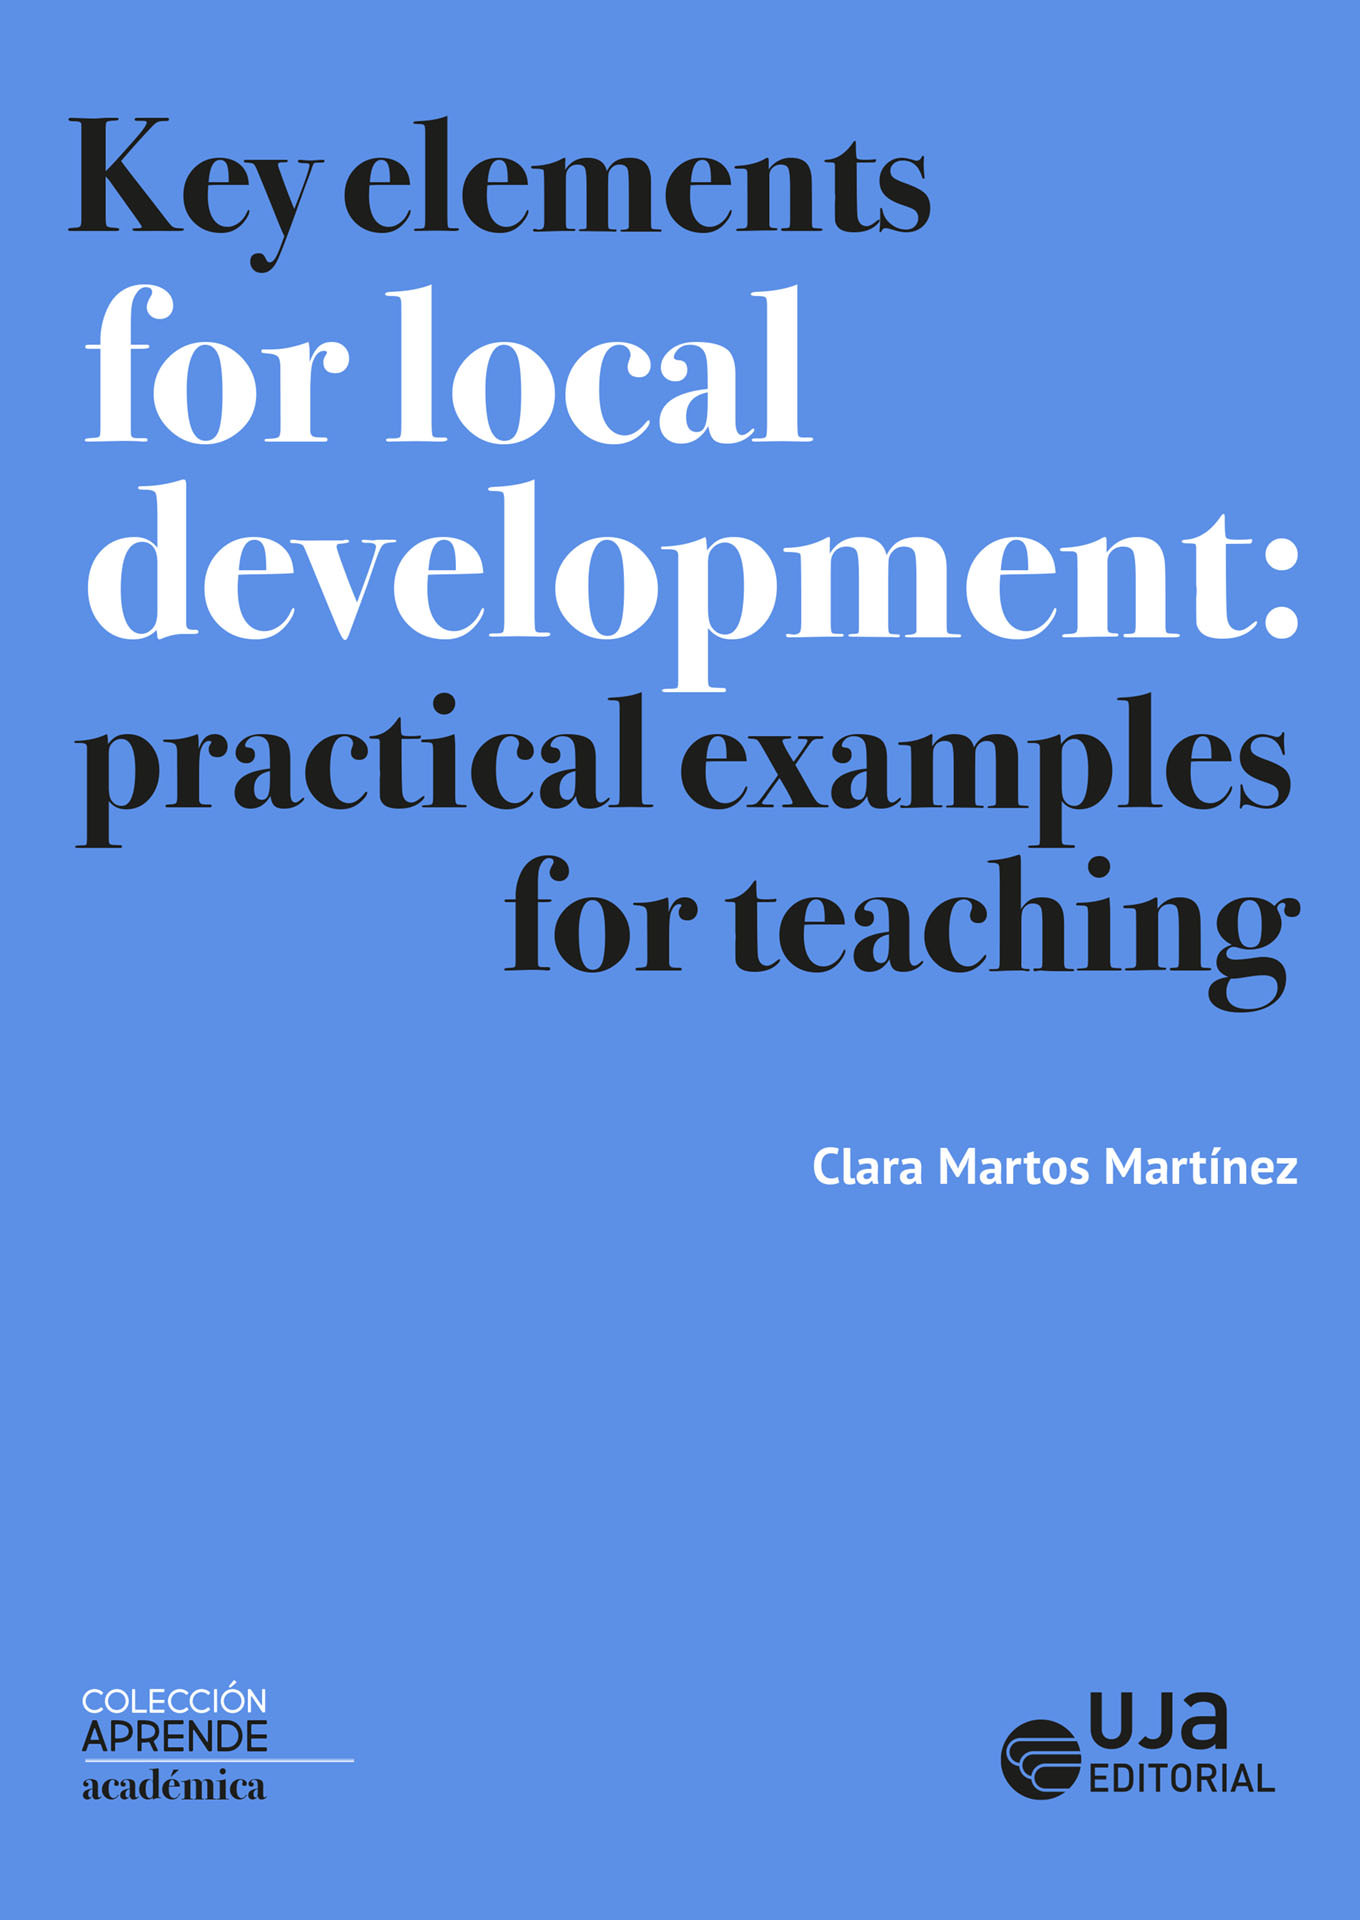 Imagen de portada del libro Key elements for local development